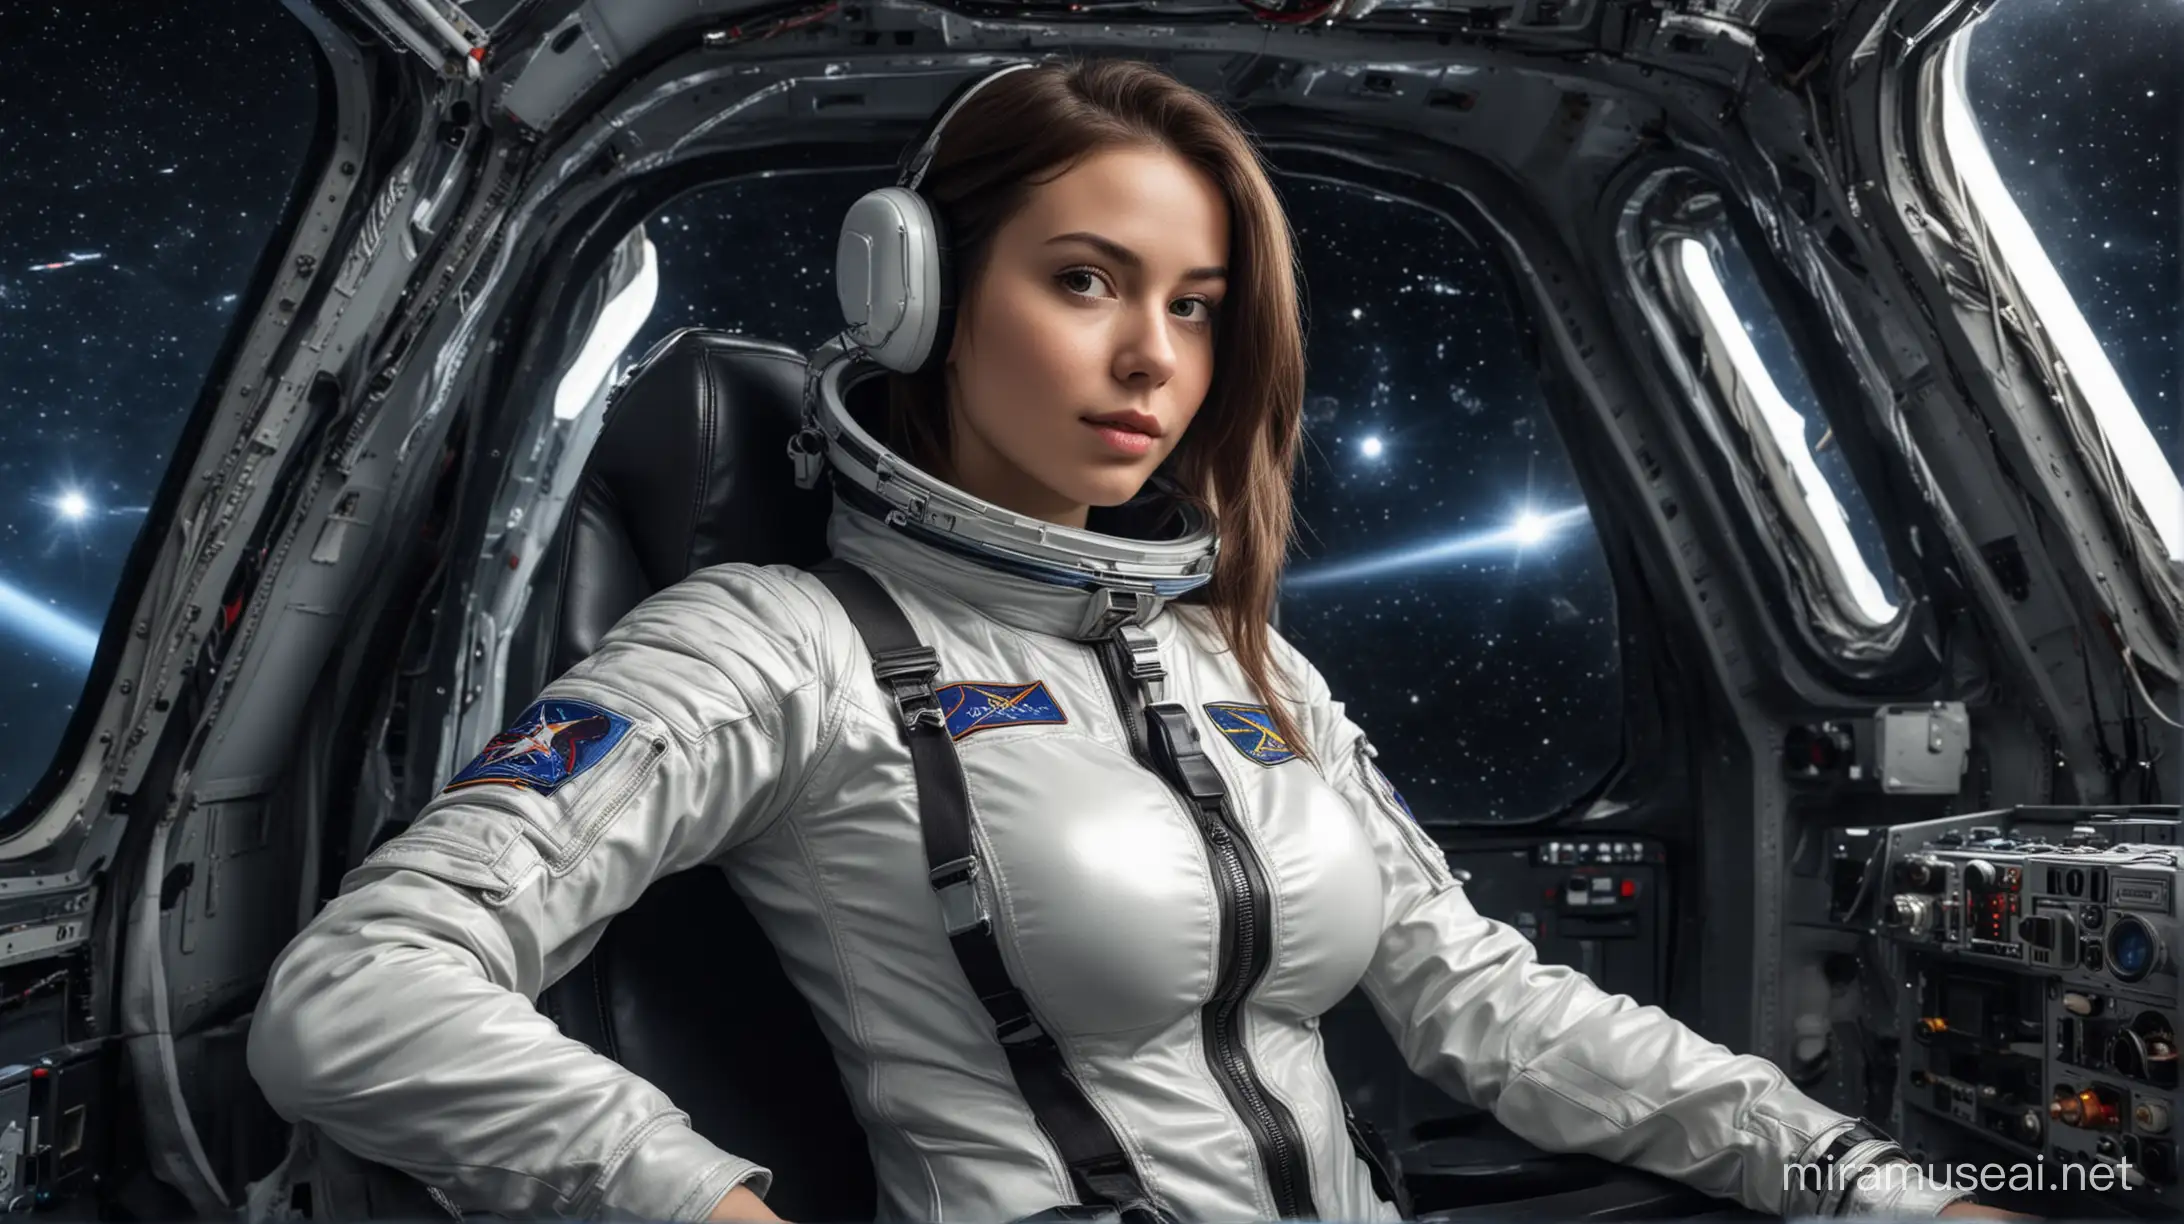 стройная девушка с большой грудью в обтягивающем скафандре в кресле пилота на фоне космоса